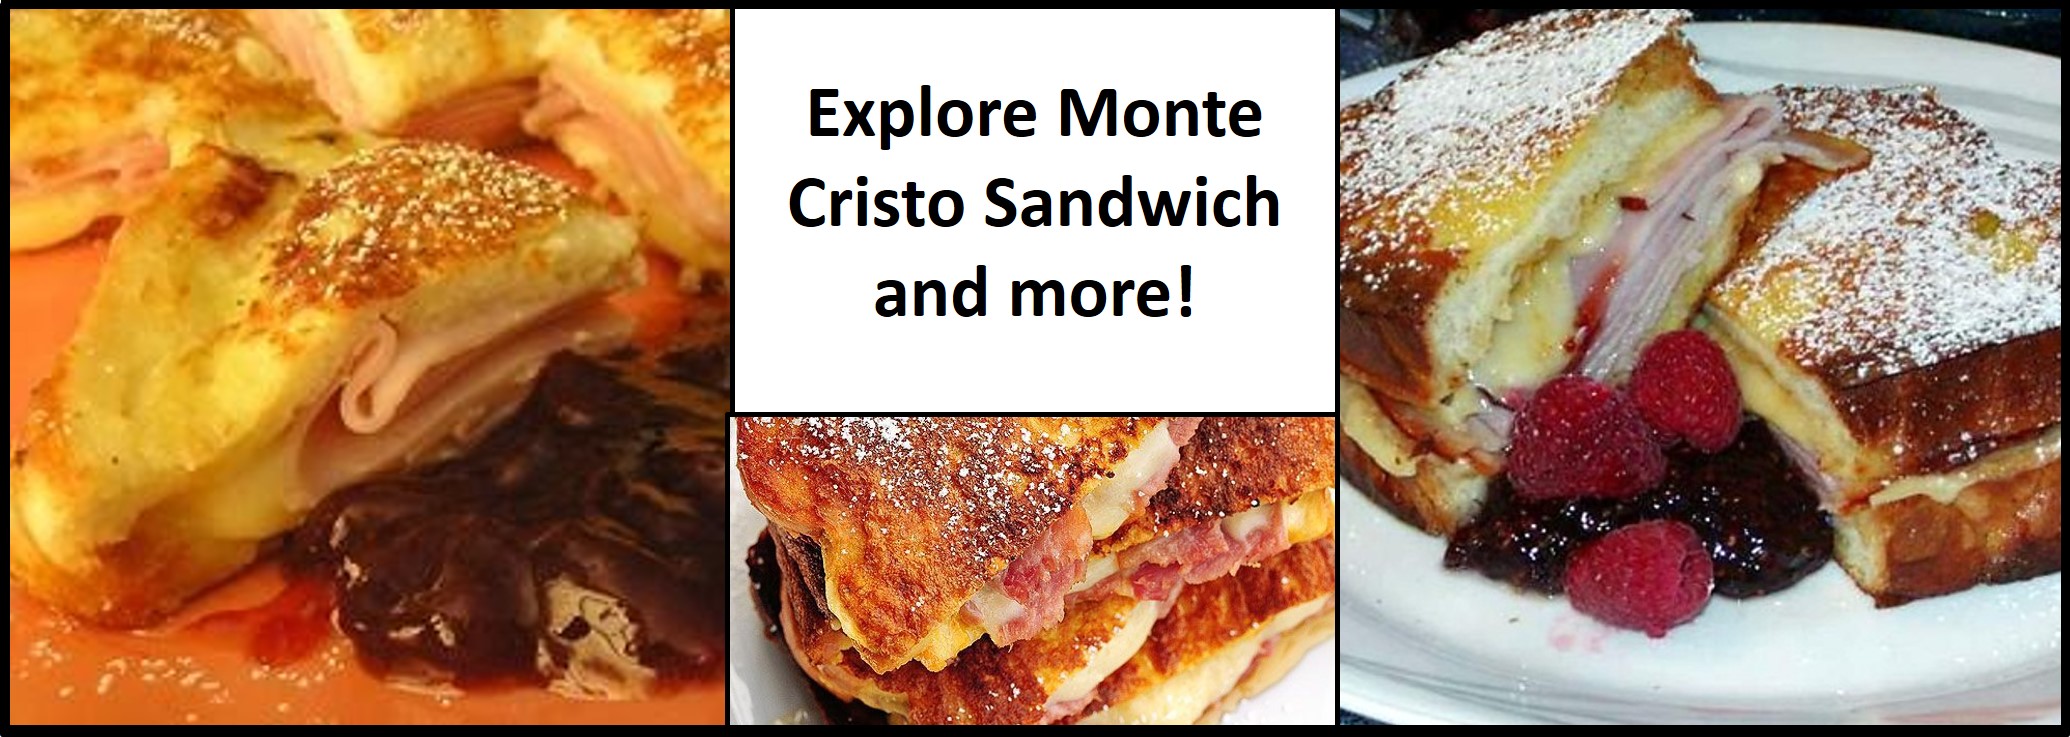 http://allrecipes.com/recipe/20803/monte-cristo-sandwich/